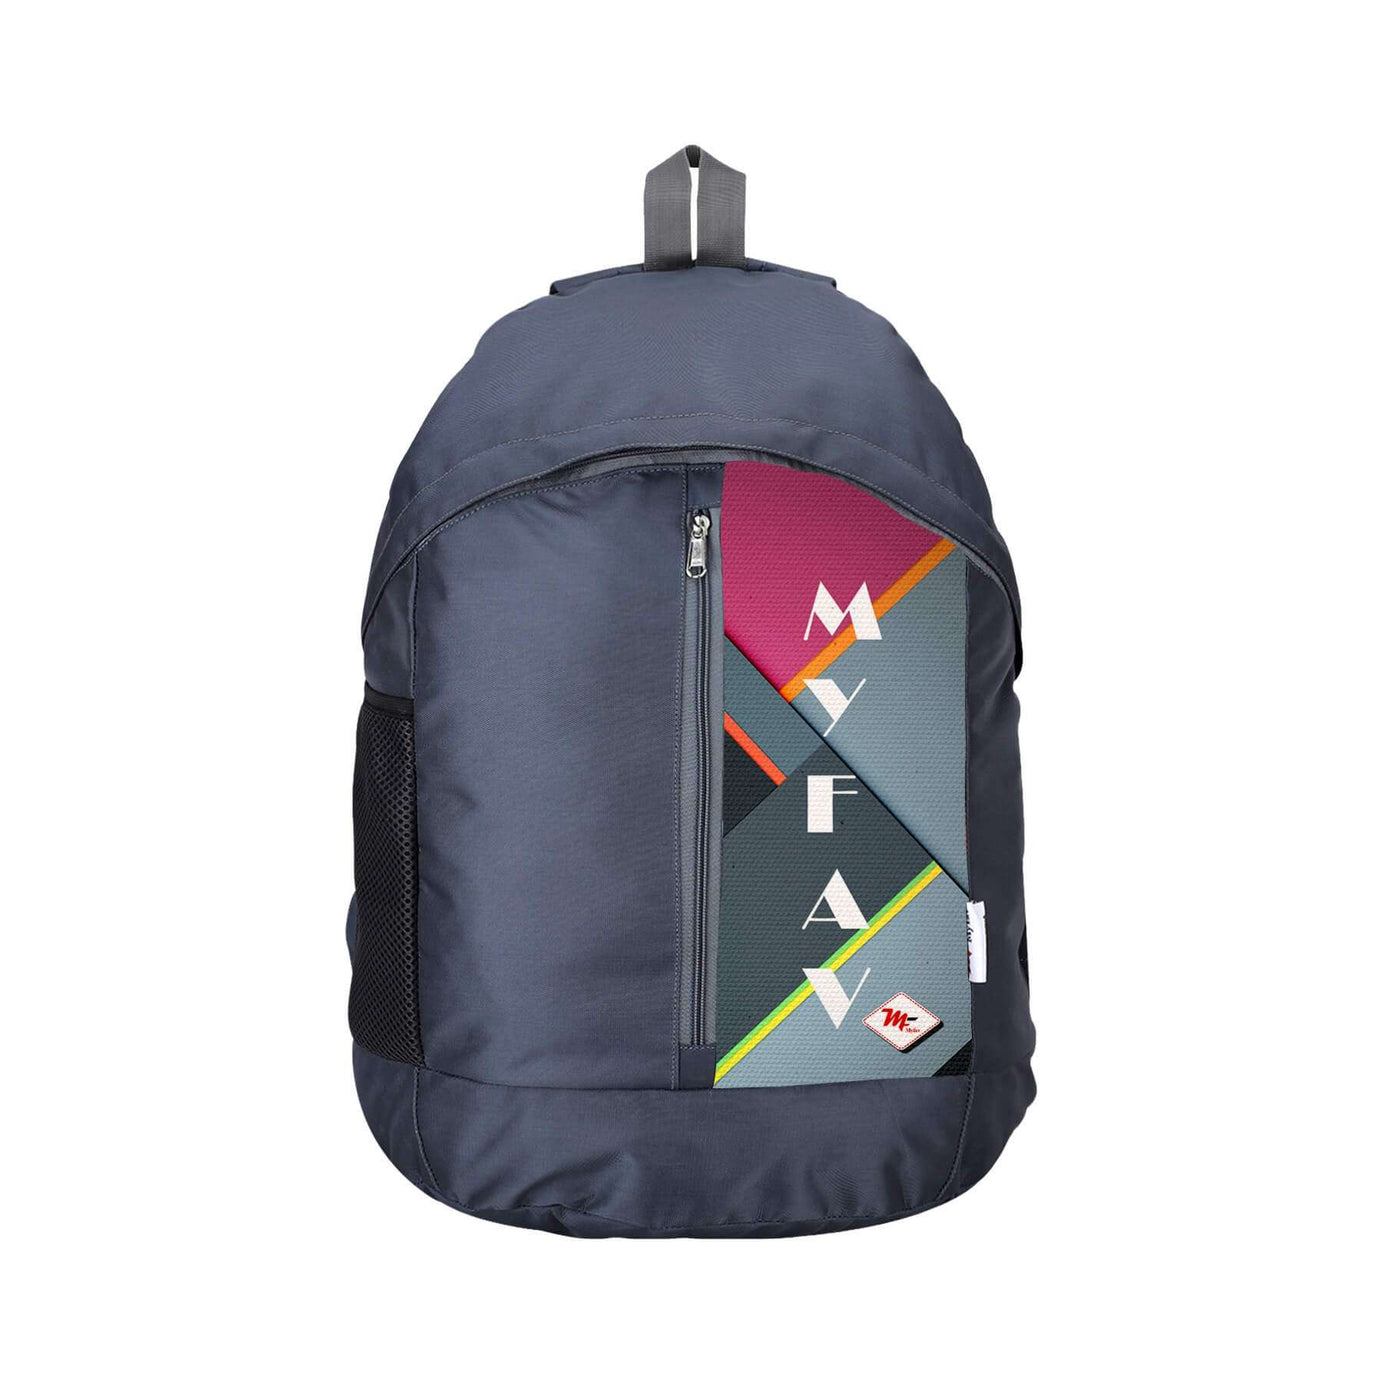 My Fav 21 L Grey Laptop Backpack for Men Women / College Bag for Boys Girls / Office Bag